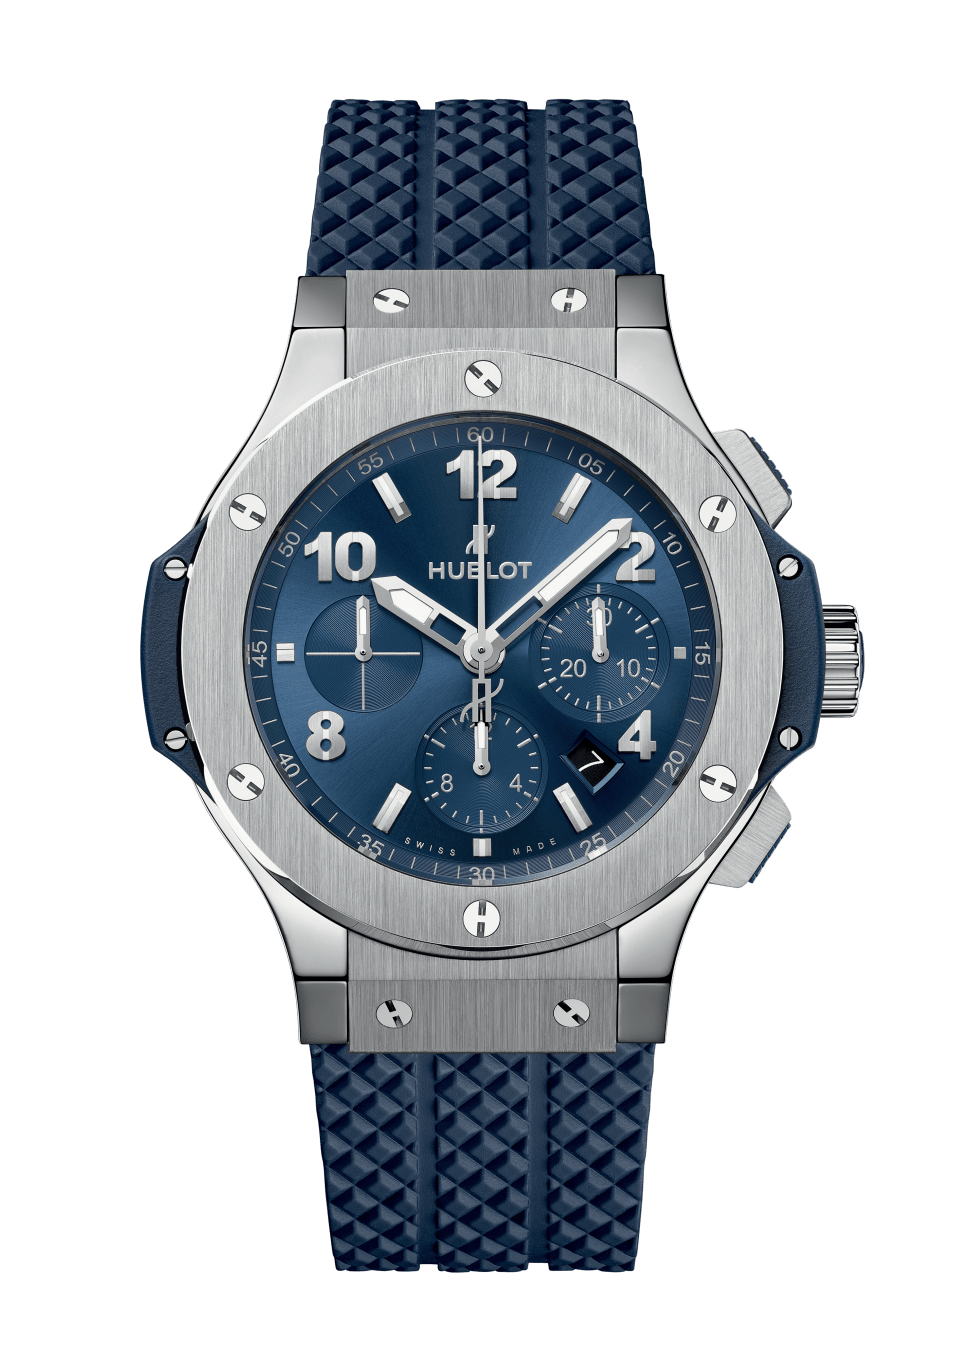 Men's watch / unisex  HUBLOT, Big Bang Original Steel Blue / 44mm, SKU: 301.SX.710.RX | watchapproach.com